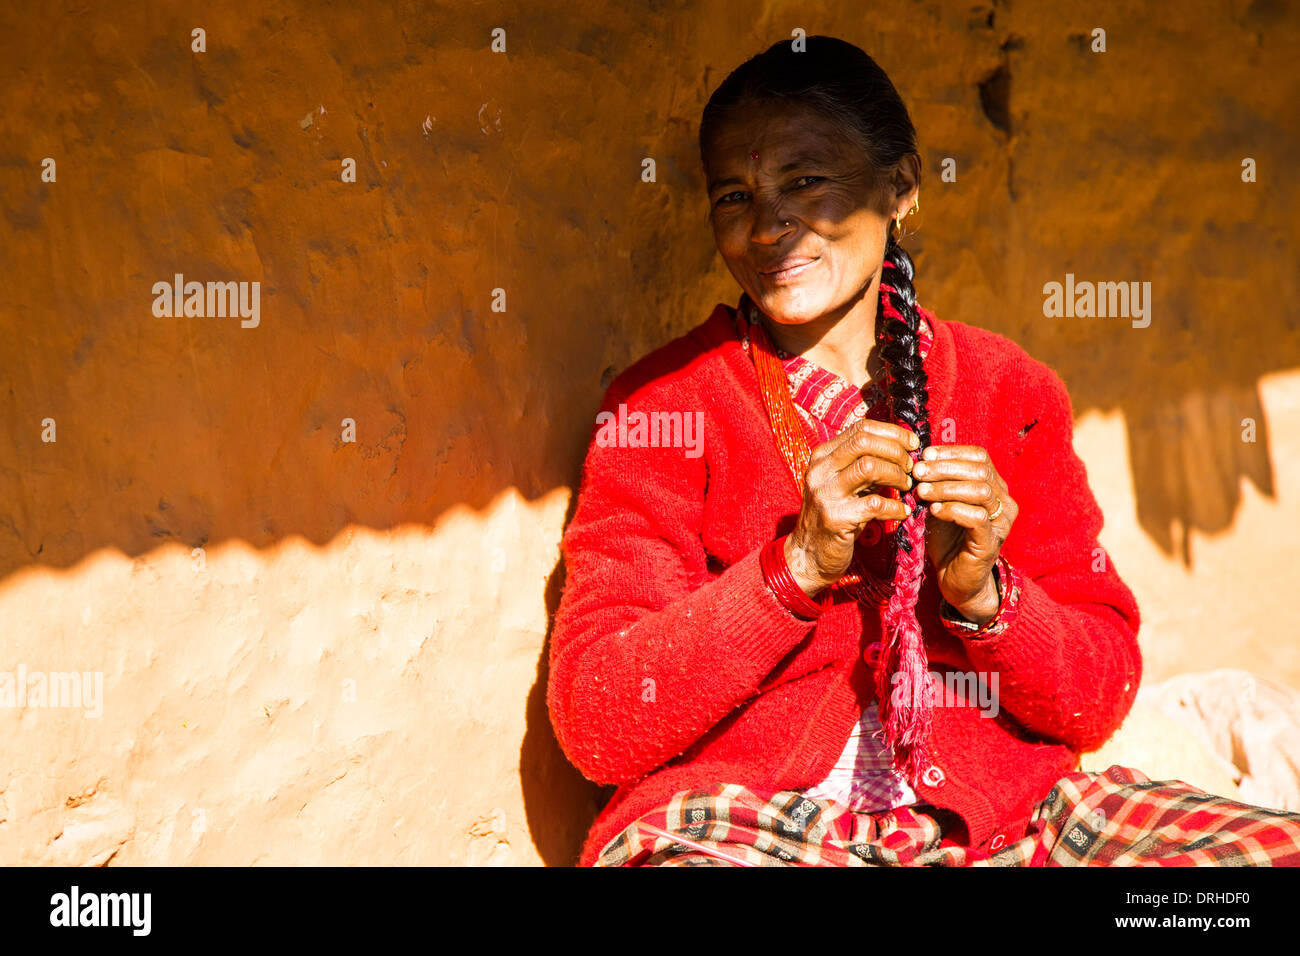 Femme népalaise dans les collines au-dessus de Katmandou, Népal Banque D'Images